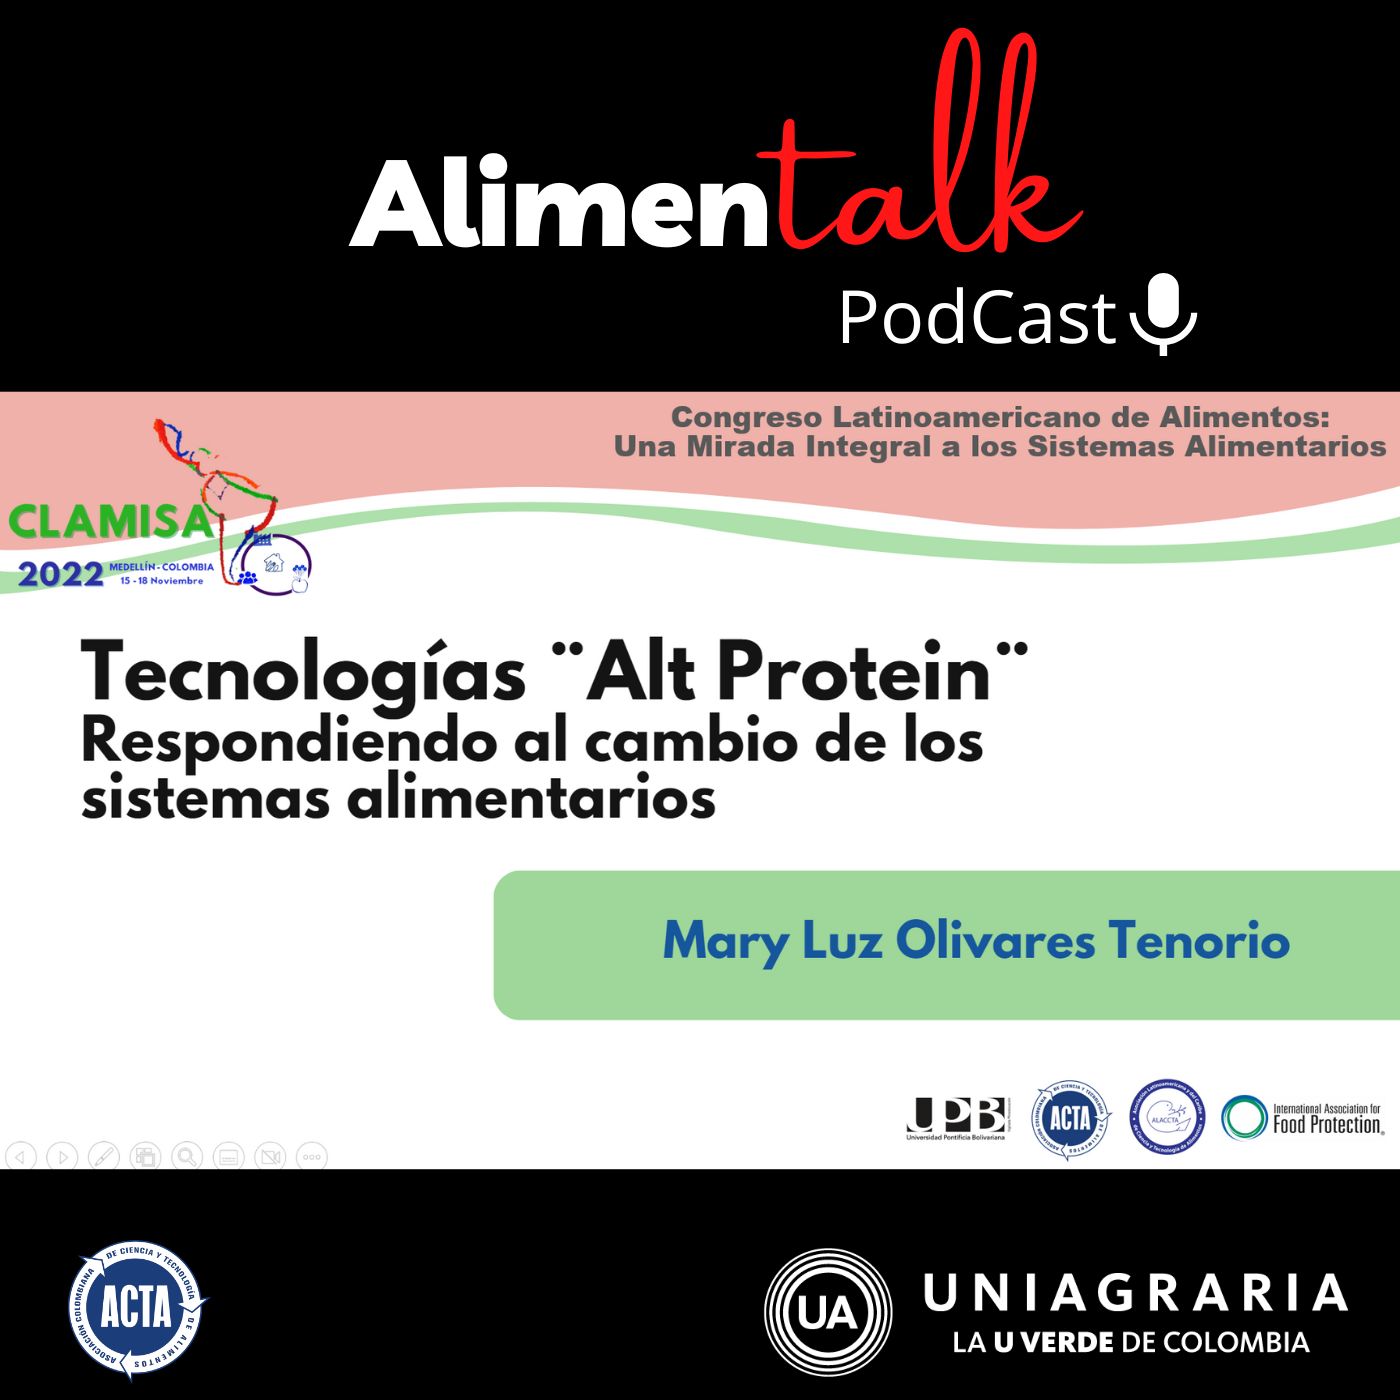 AlimenTalk podCast: Tecnologias Alt Protein Respondiendo al cambio de los sistemas alimentarios